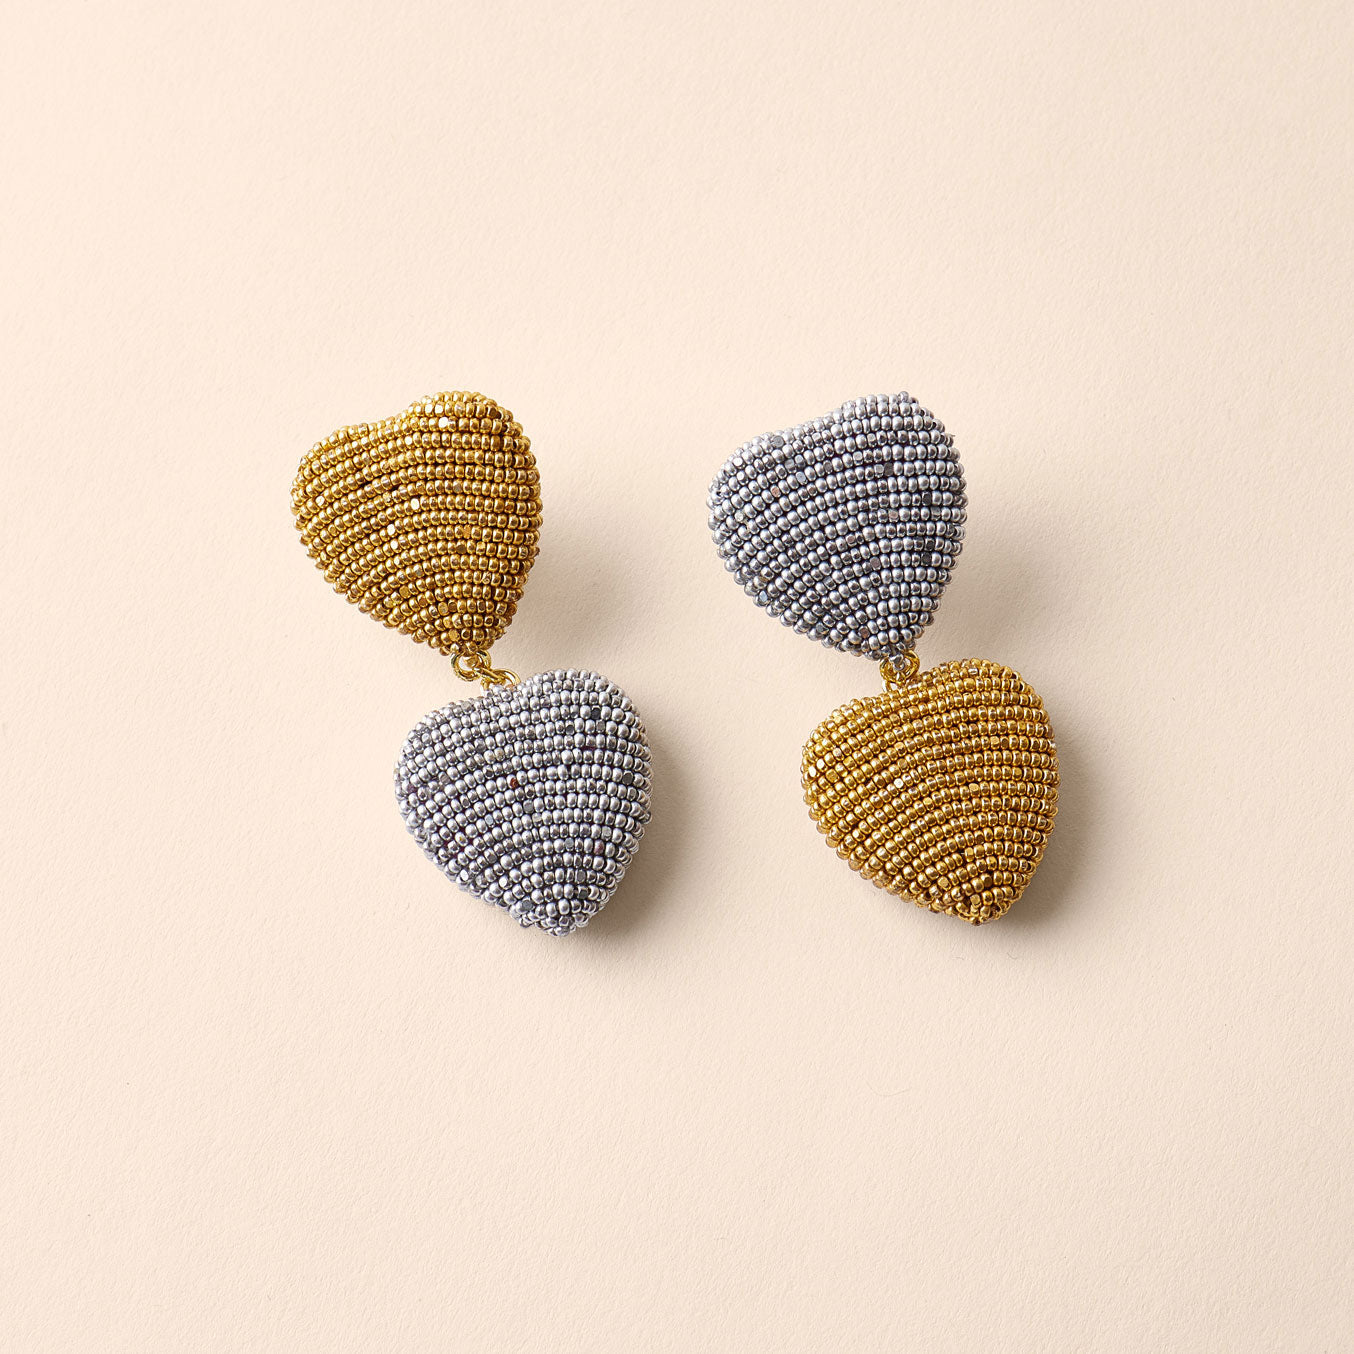 Mini Heart Breaker Drop Earrings Silver Gold by Mignonne Gavigan